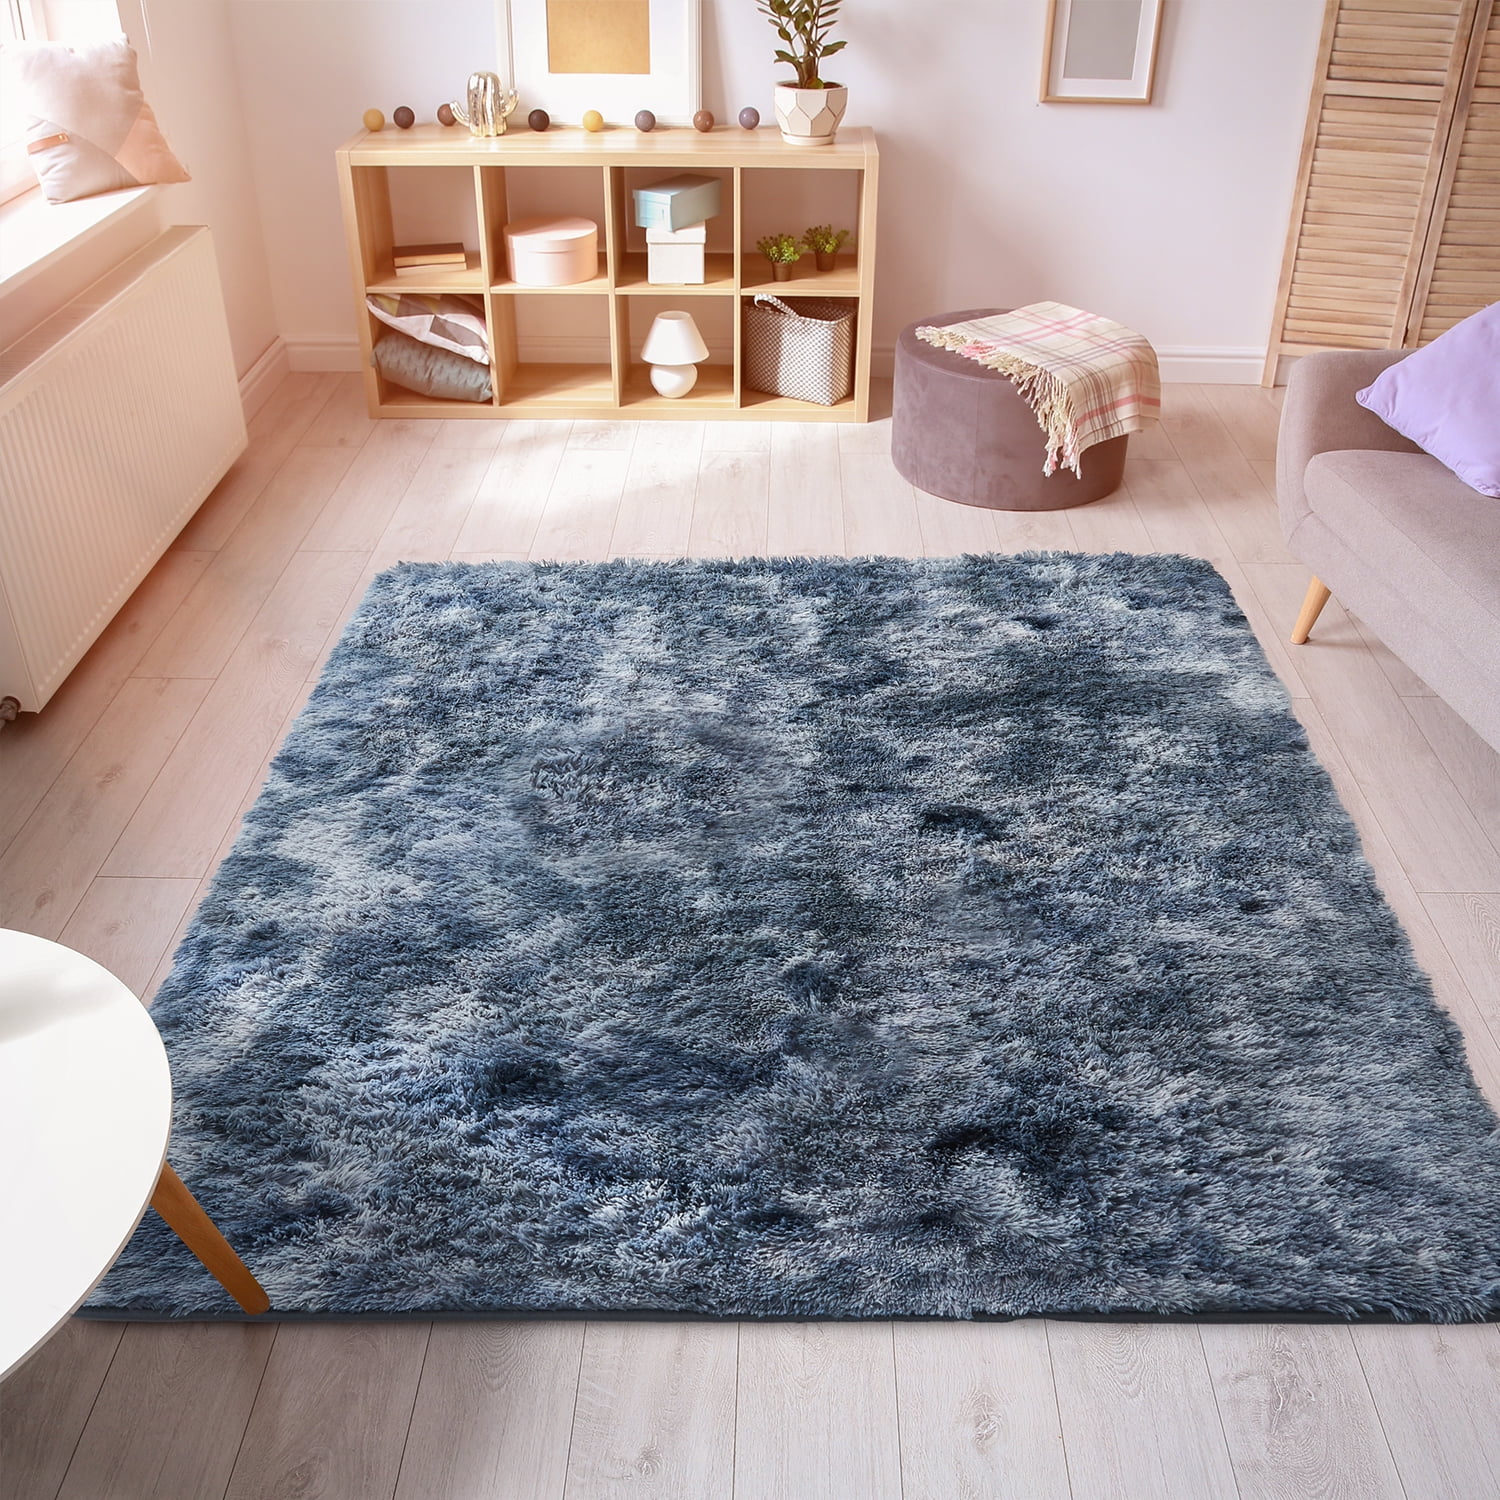 LB Transparent Piano Key Floor Mat Area Rugs Livingroom Bedroom Non-Slip Carpets 